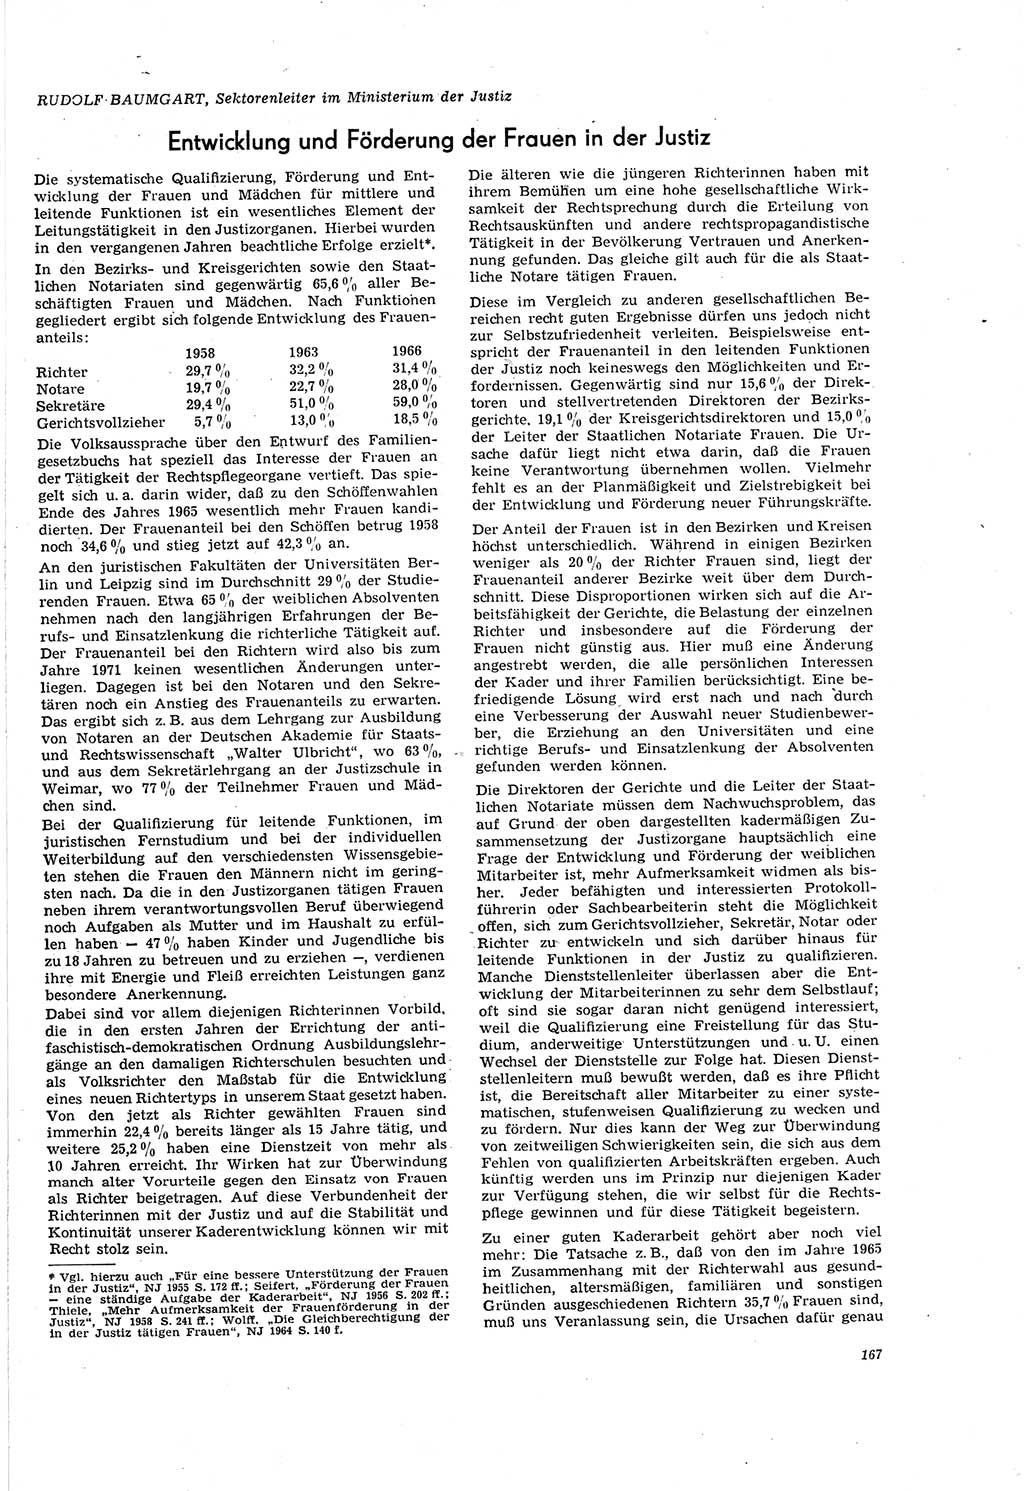 Neue Justiz (NJ), Zeitschrift für Recht und Rechtswissenschaft [Deutsche Demokratische Republik (DDR)], 20. Jahrgang 1966, Seite 167 (NJ DDR 1966, S. 167)